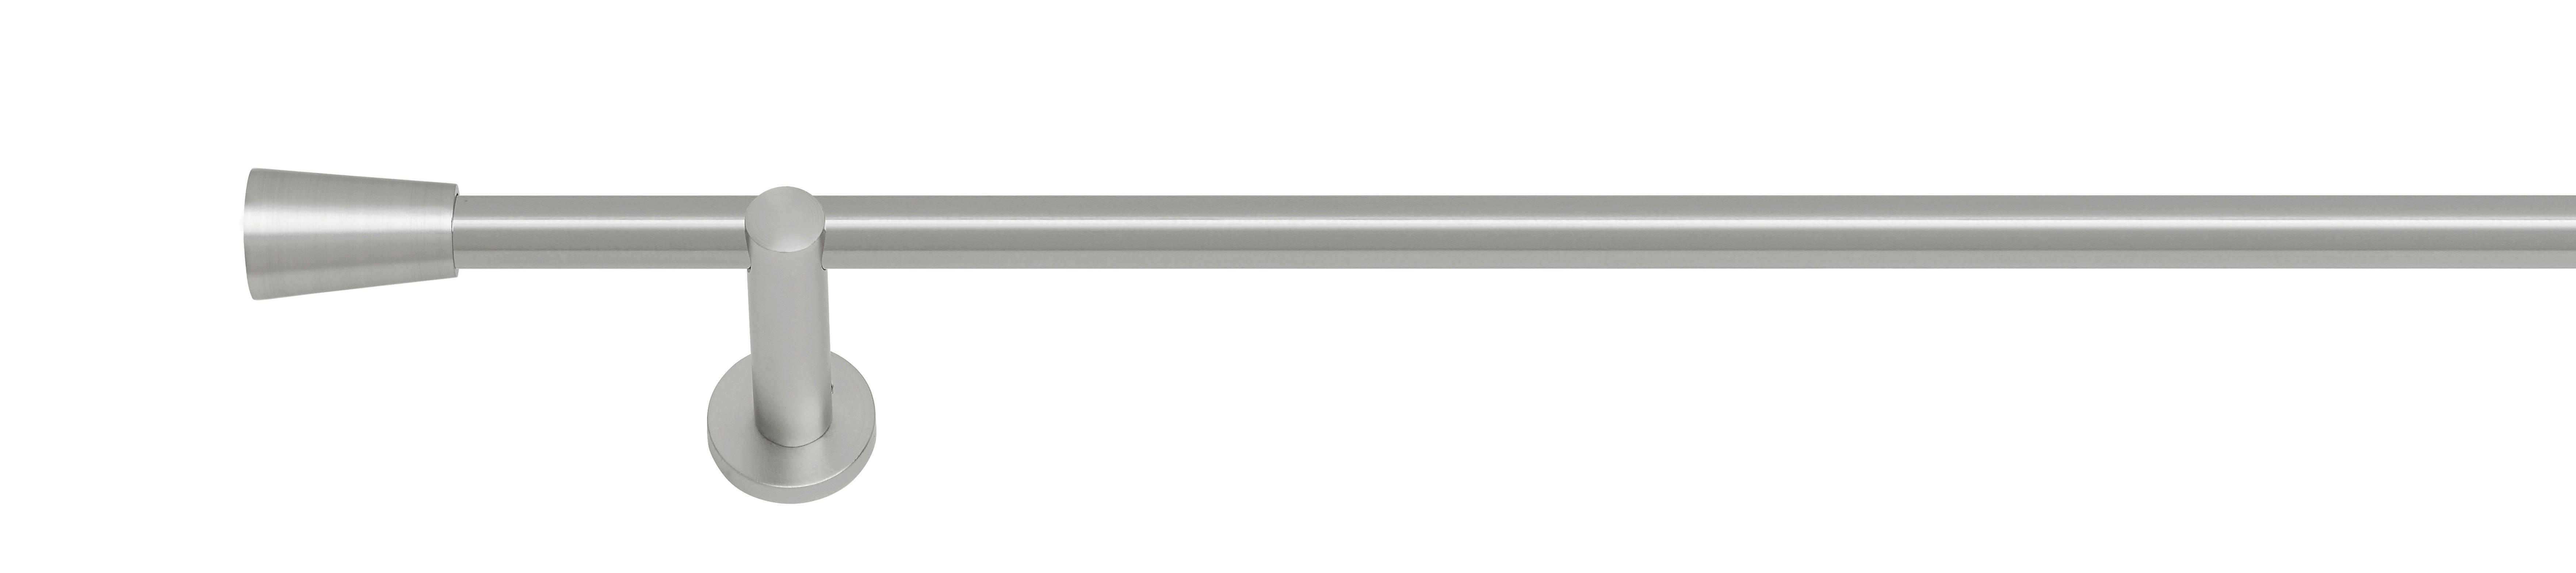 VORHANGSTANGENSET 100-190 cm  - Edelstahlfarben, Design, Metall (100-190cm) - Homeware